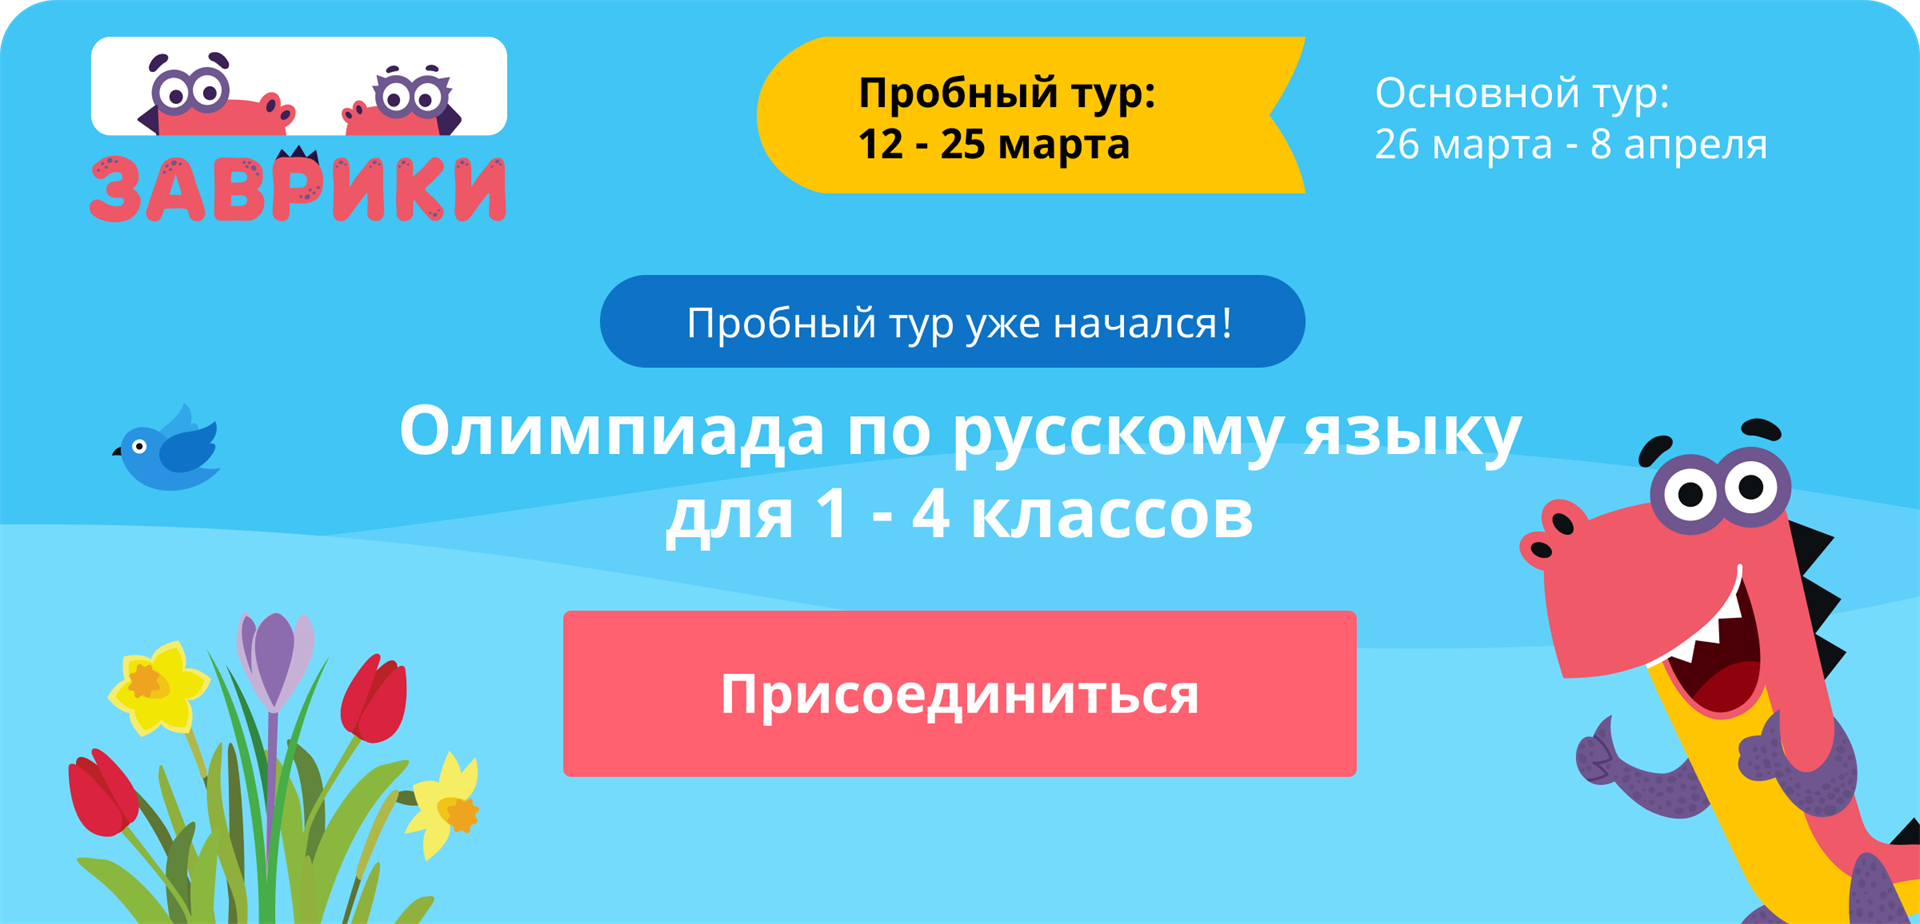 Олимпиада по русскому языку для 1-4 классов «Заврики»